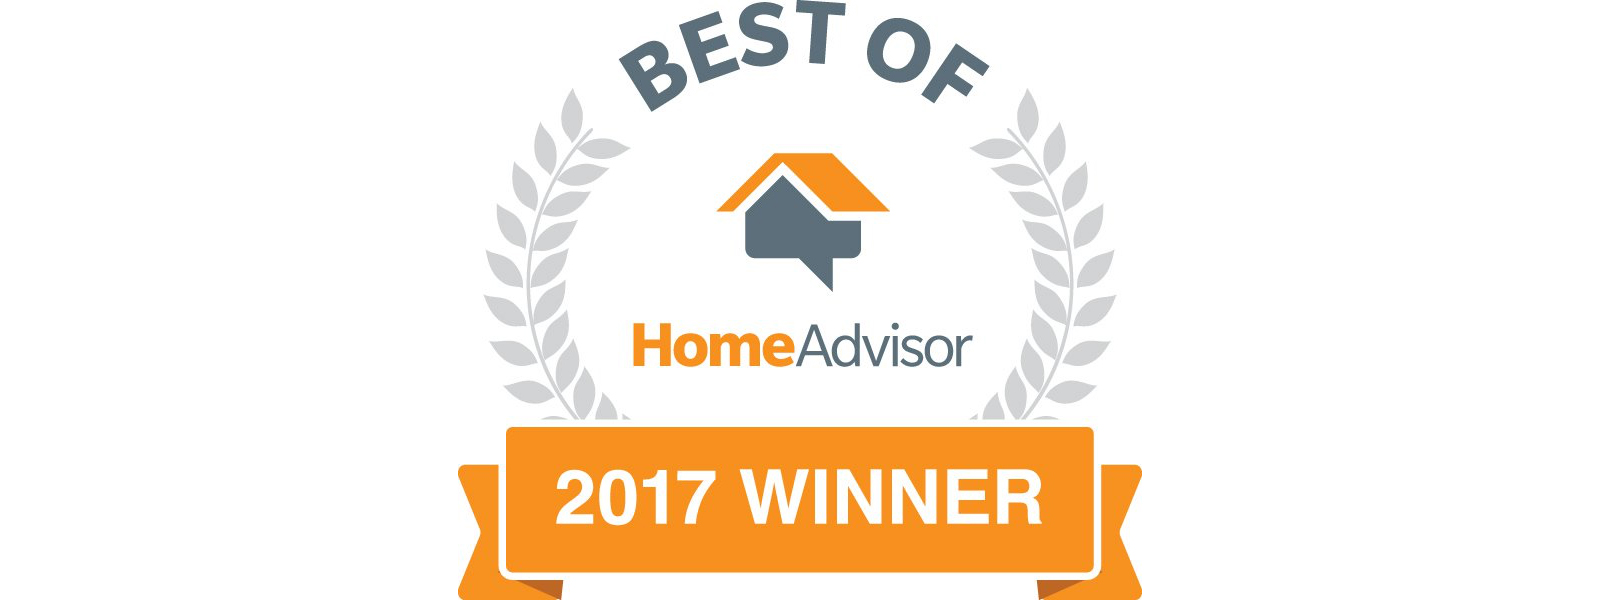 best roofer homeadvisor 2017